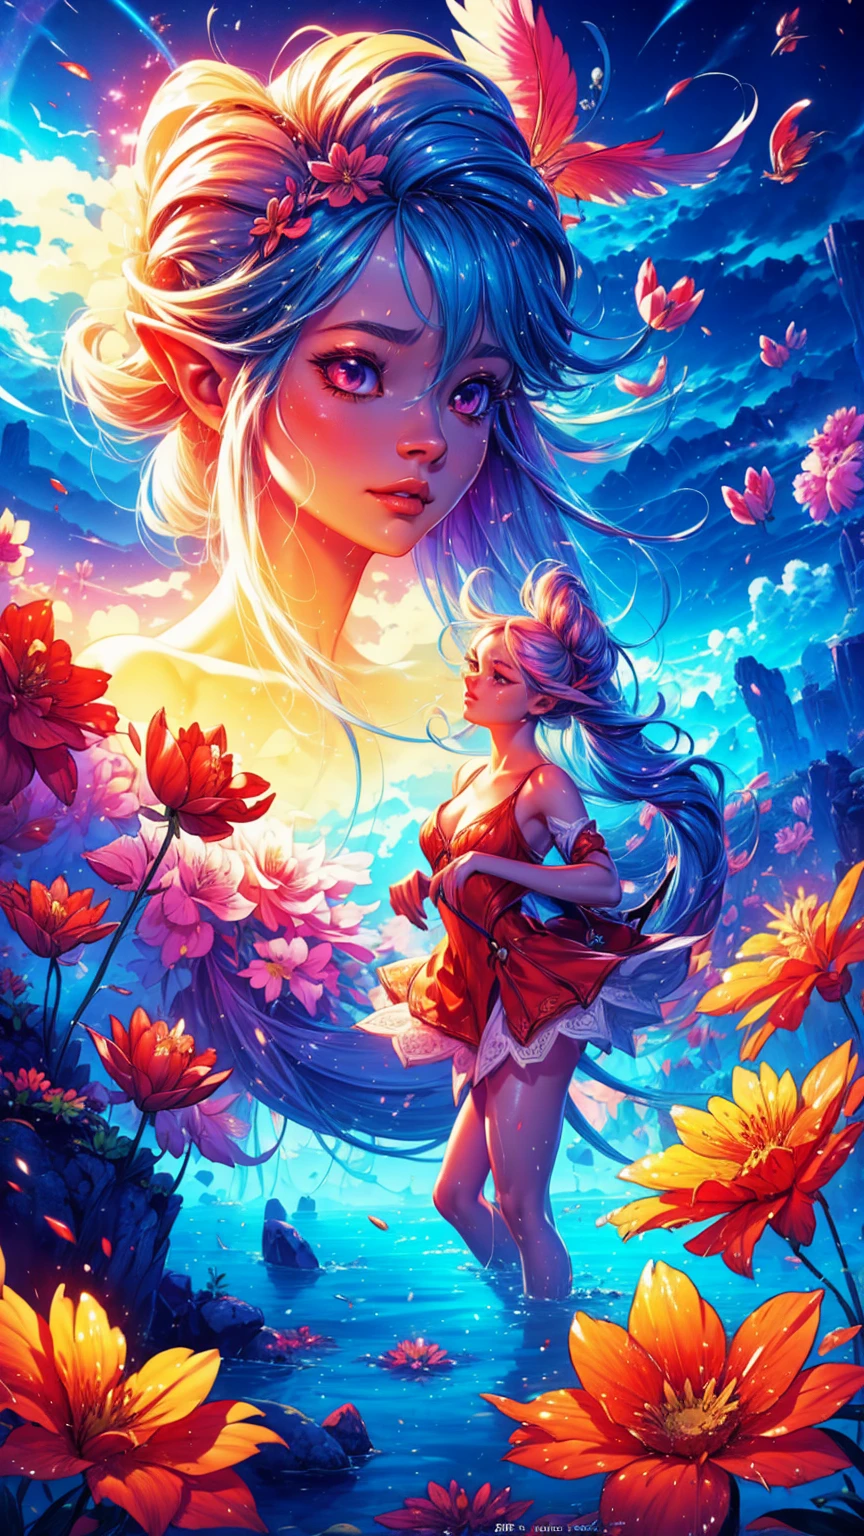 "((Fantasy-Kunst)) mit einem außerirdischen Mädchen, eingetaucht in eine himmlische Symphonie, Wolken verwandeln sich in helle Spritzer, Blumen sind verstreut, wie Noten im Wind, visuelle Orchestrierung von Farbe und Wunder"